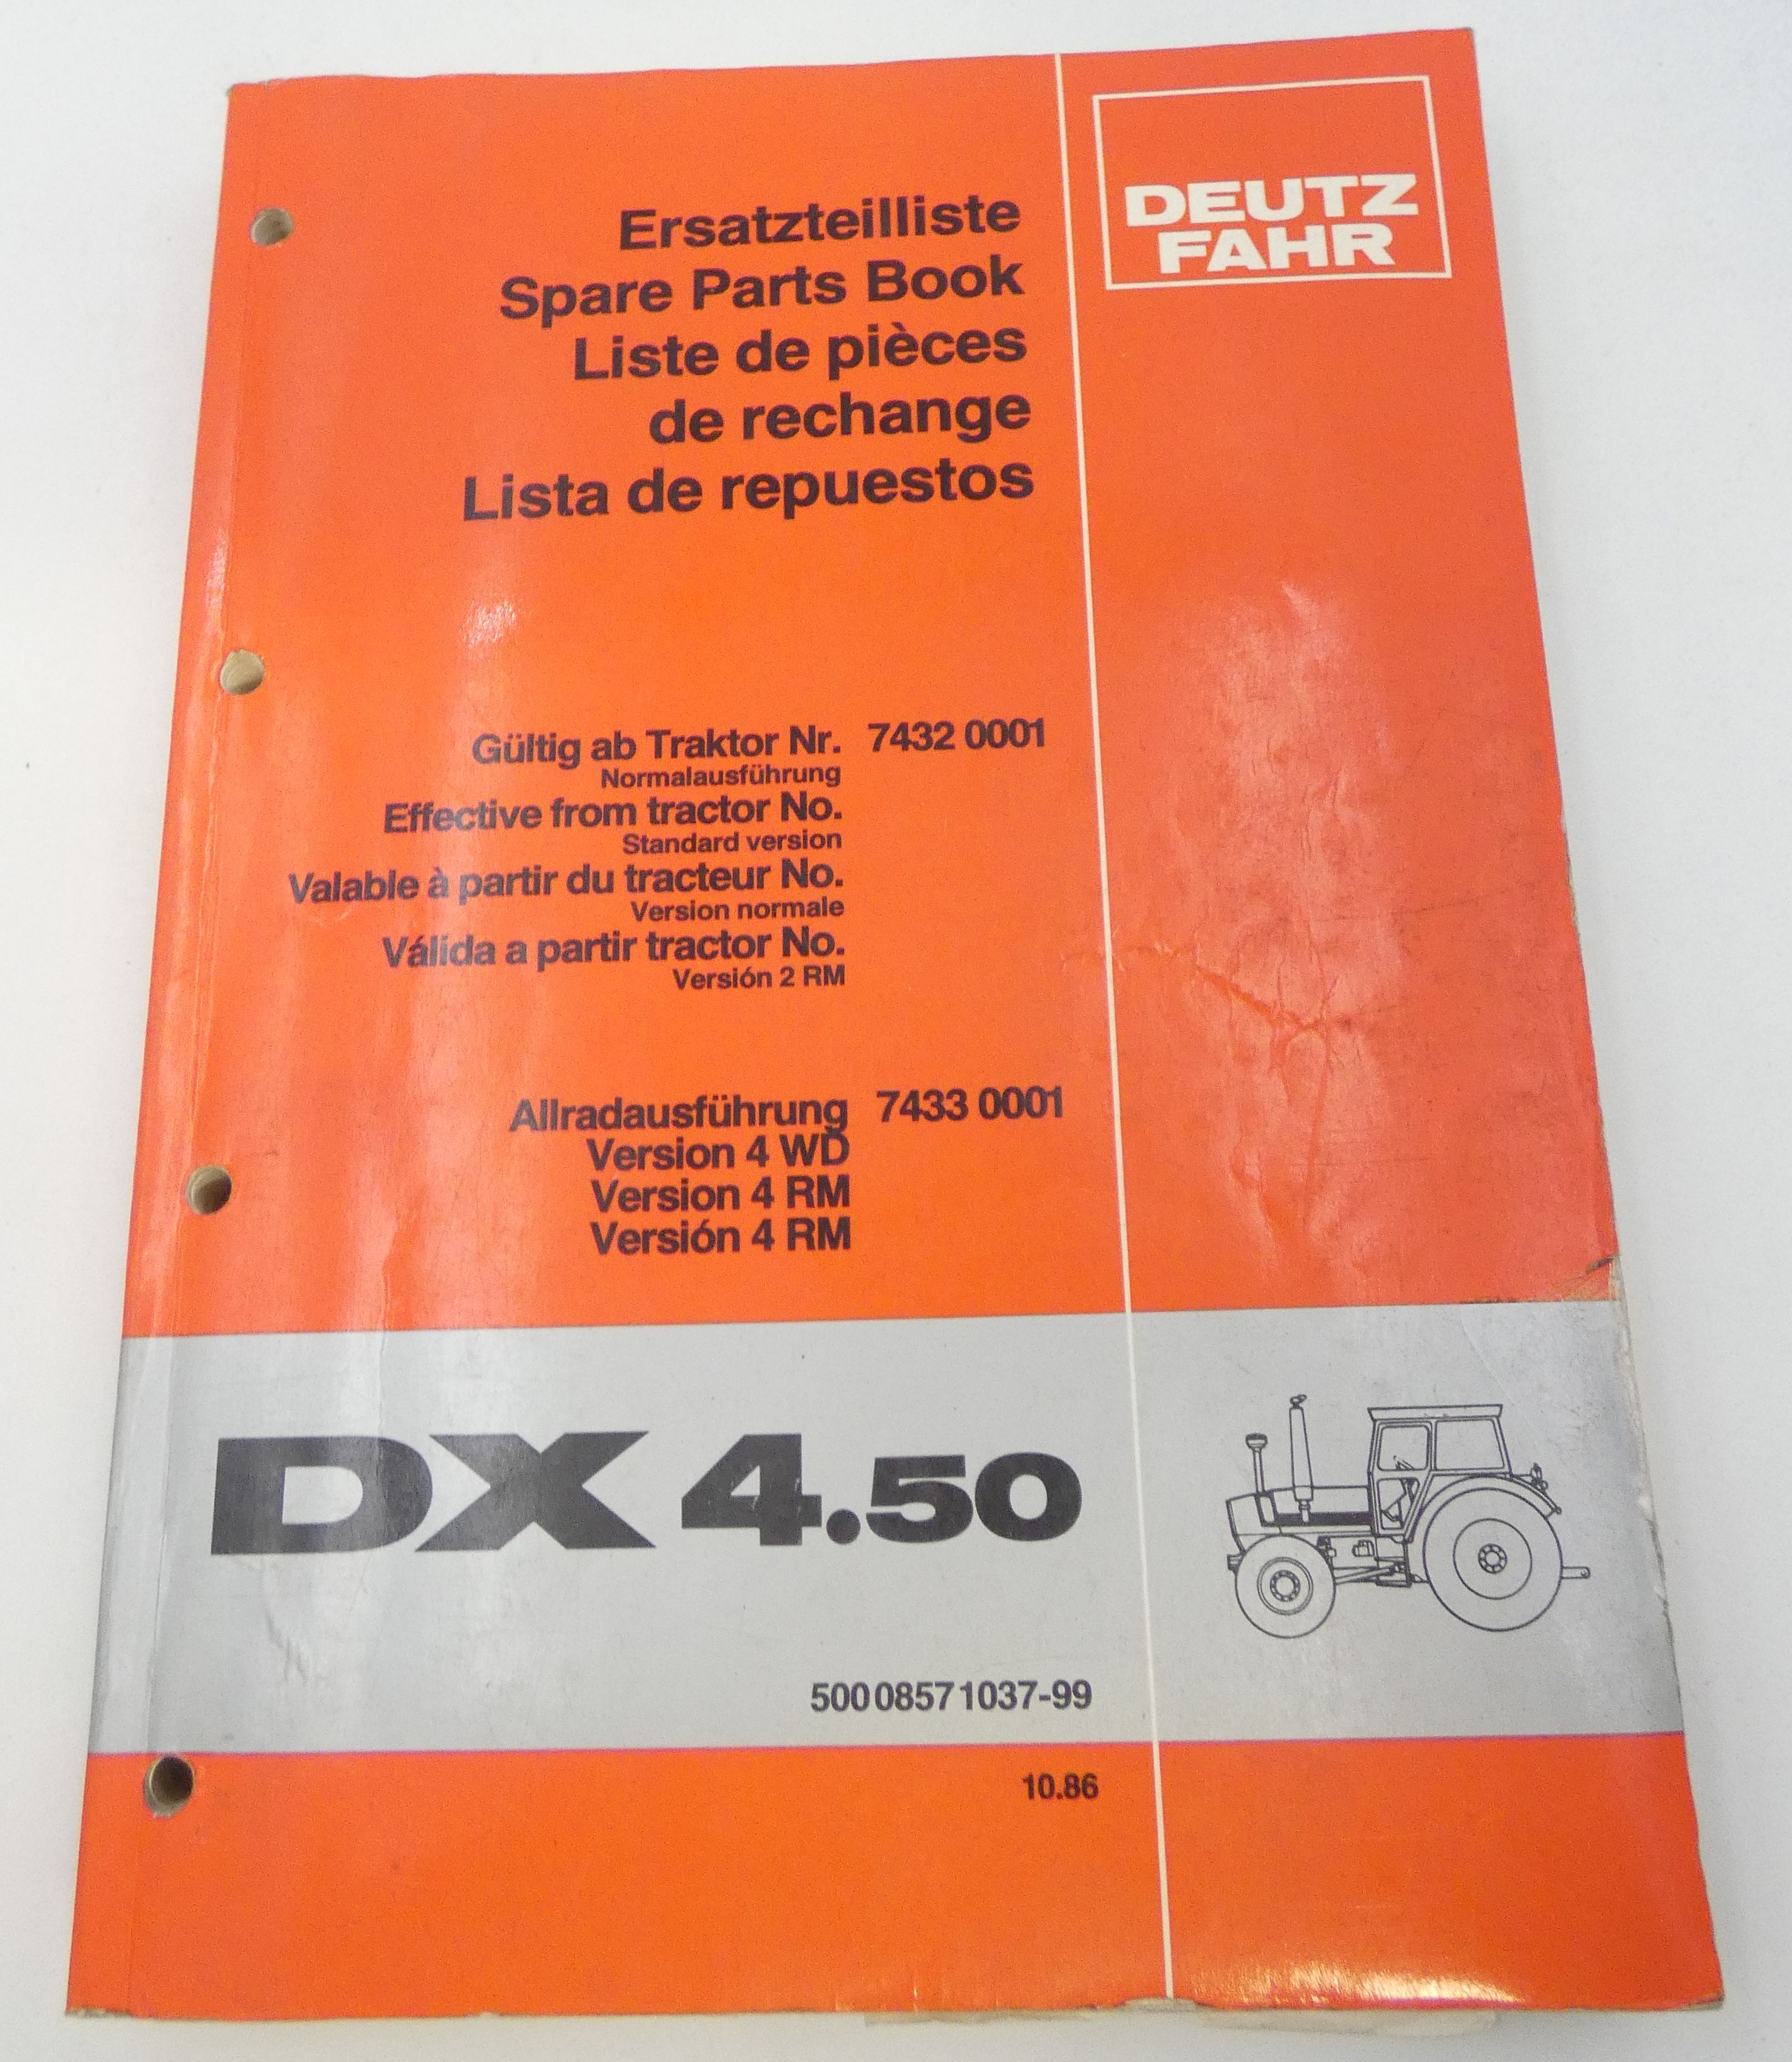 Deutz-Fahr DX4.50 spare parts book